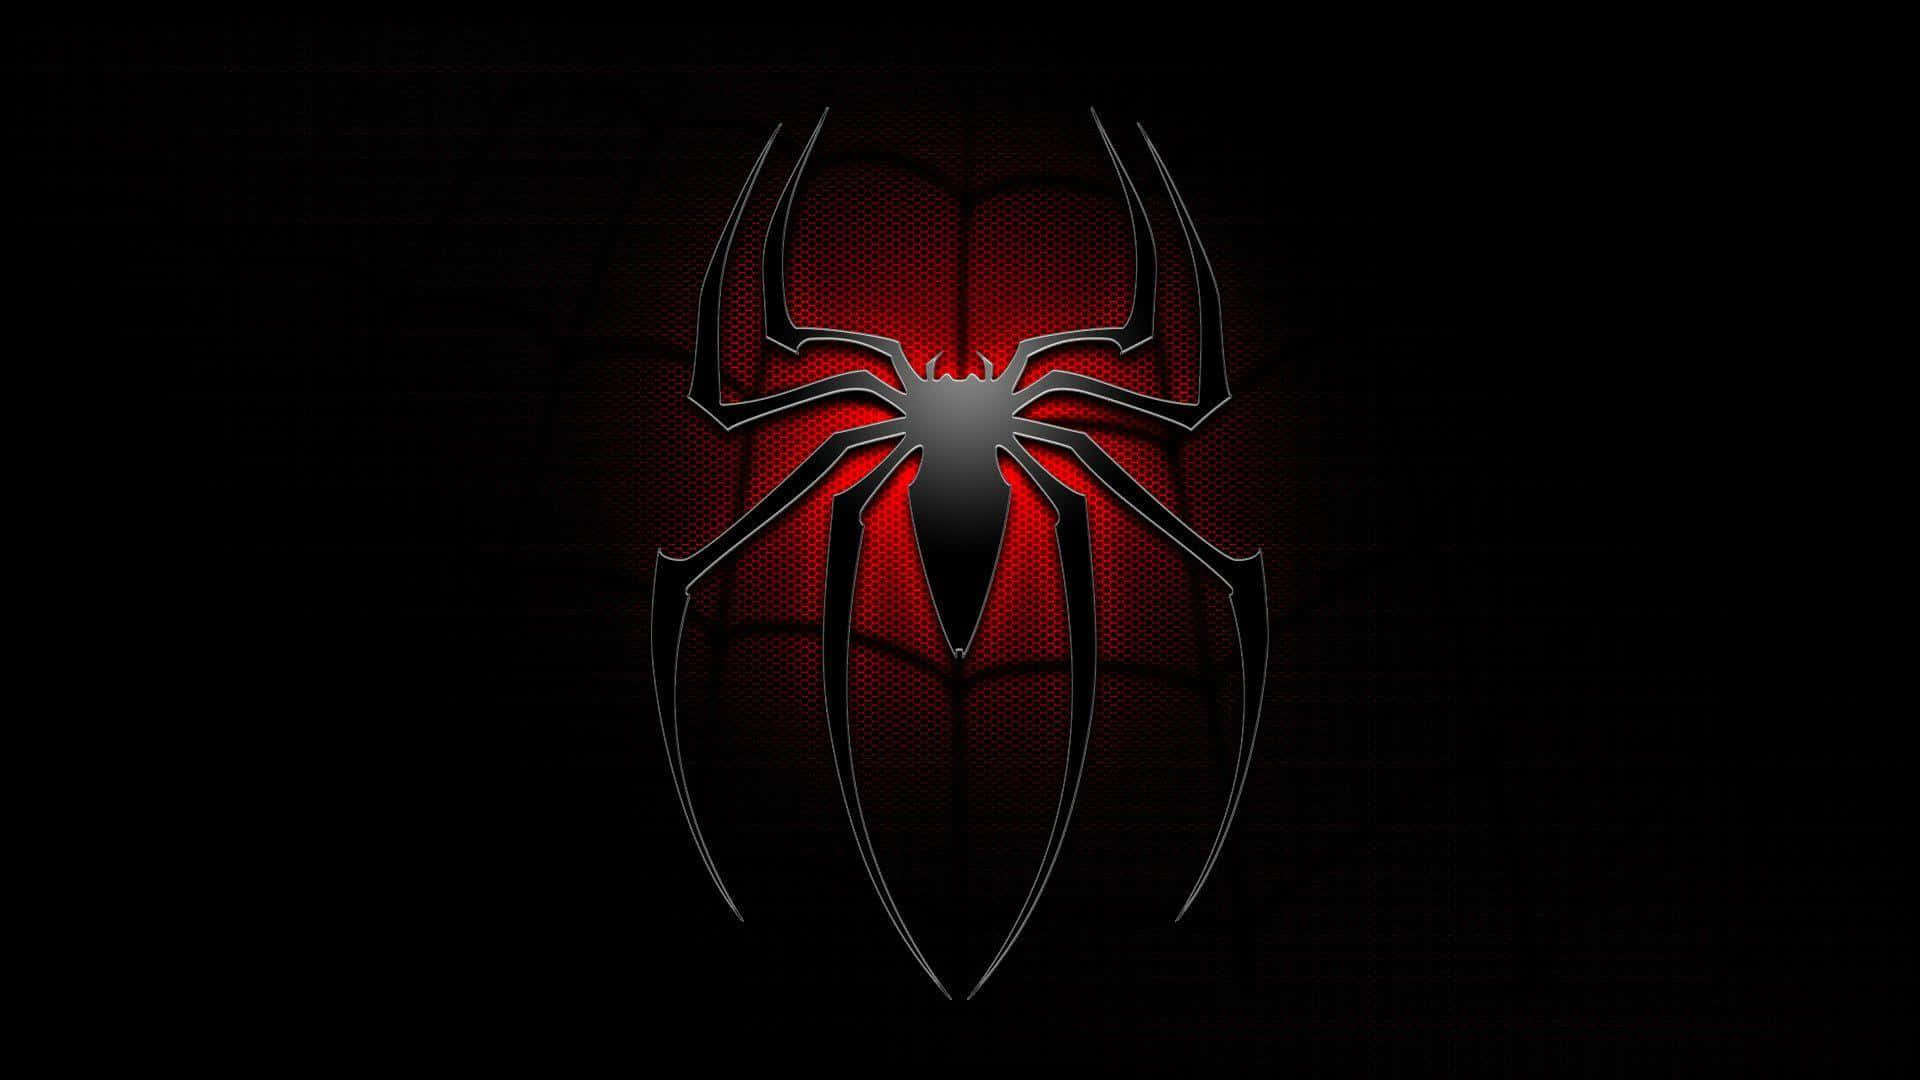 Daserstaunliche Spider-man-logo Auf Schwarzem Hintergrund Wallpaper